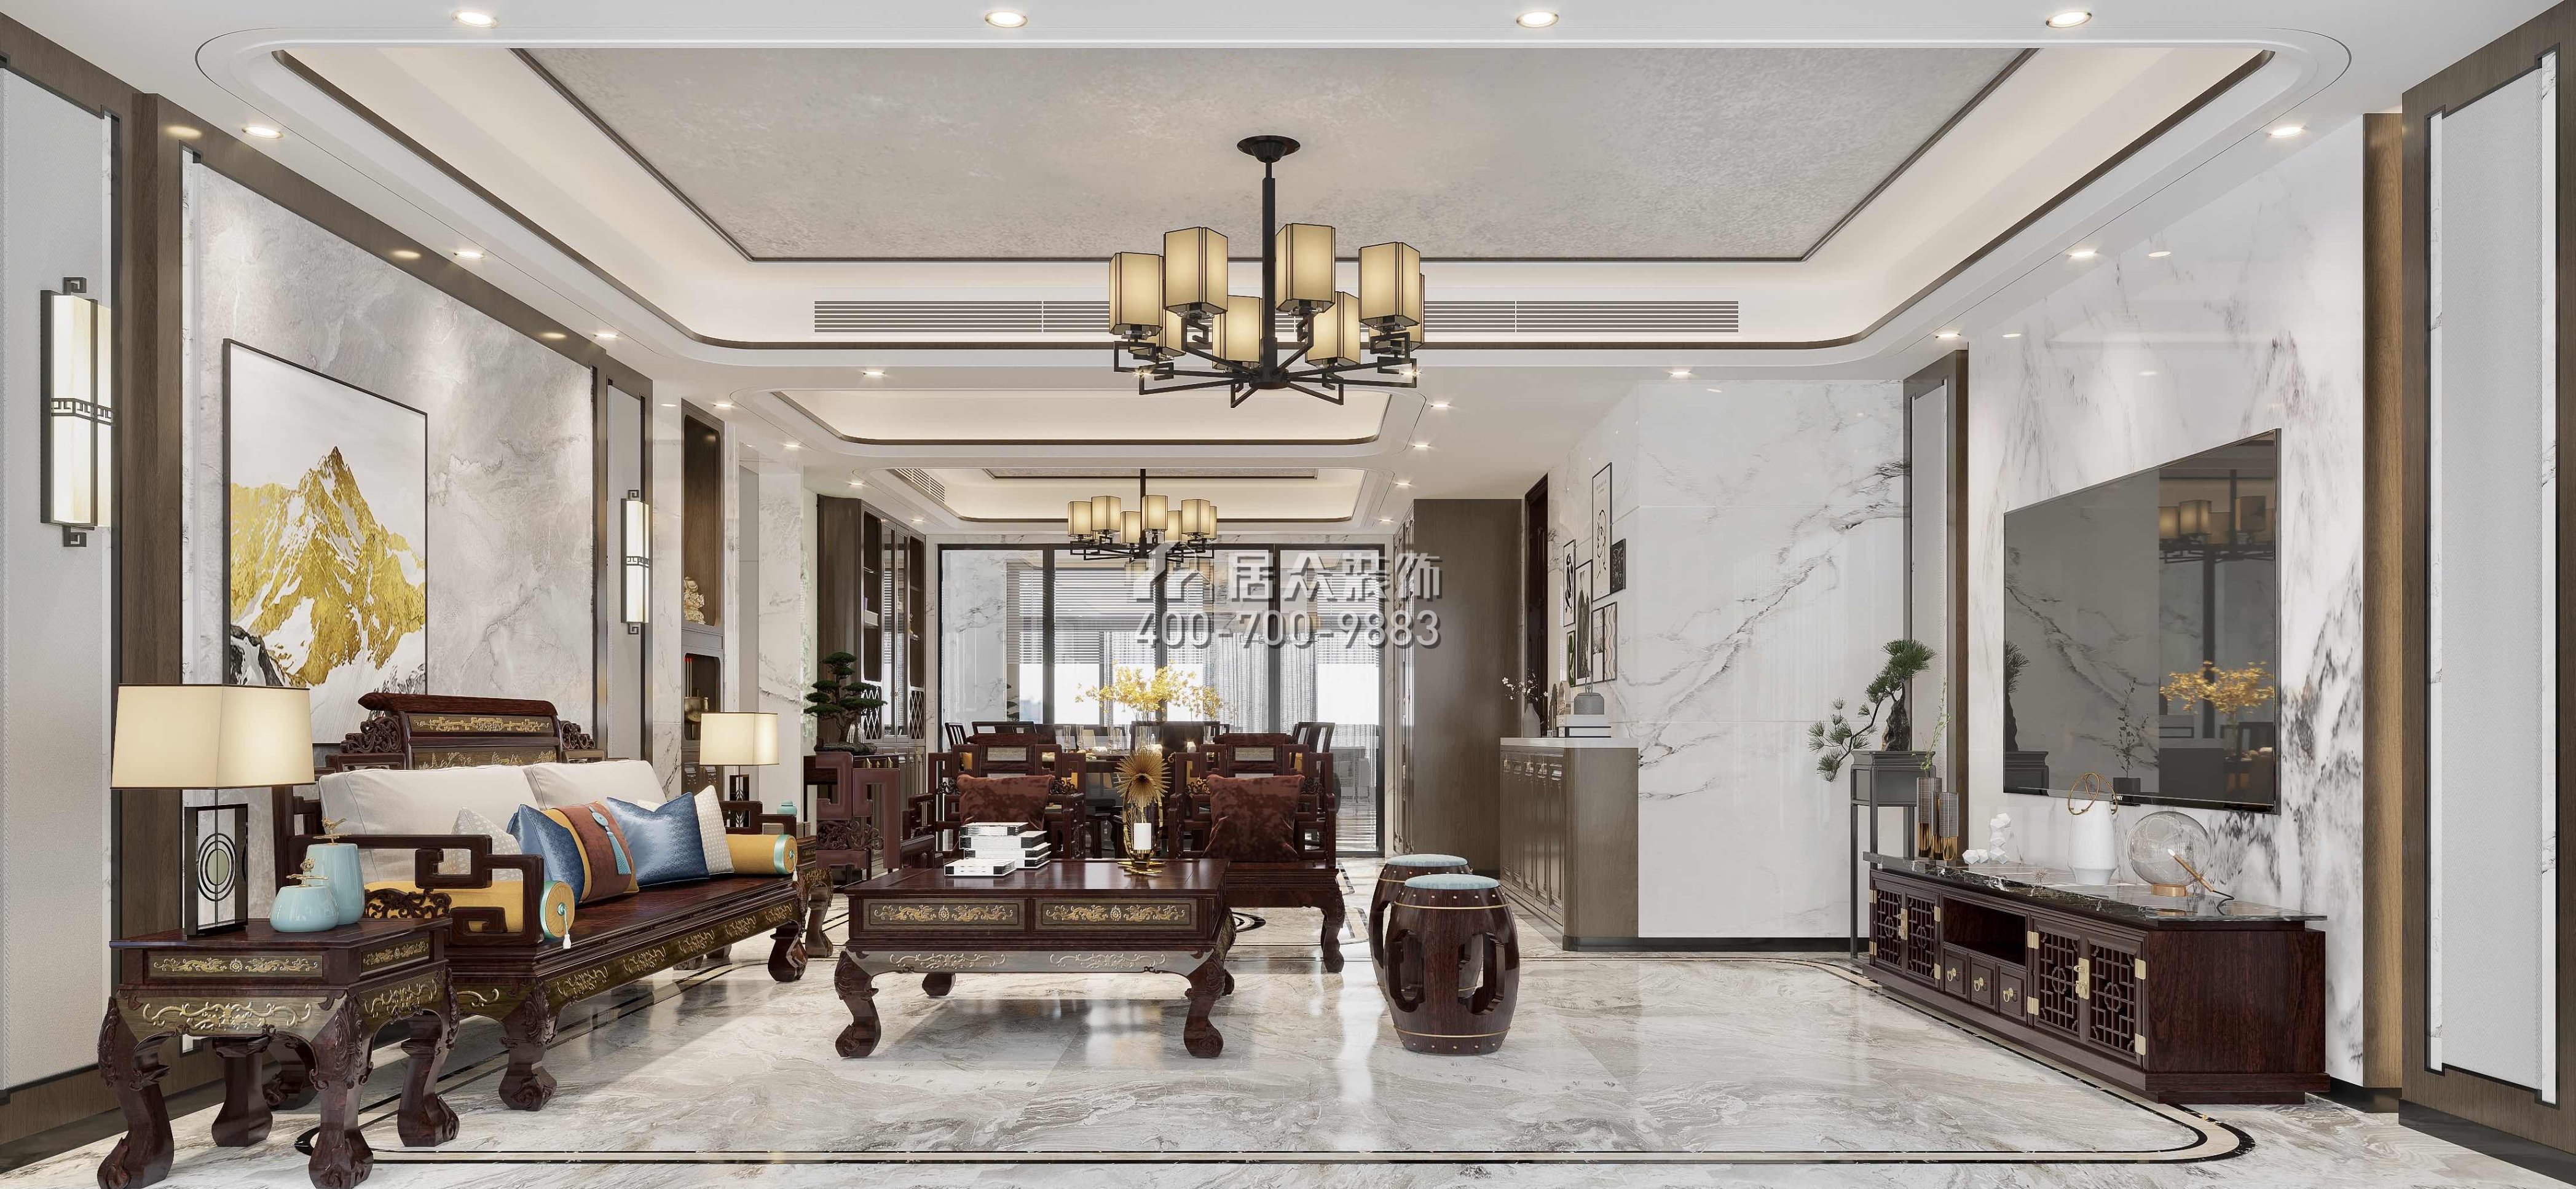 光华园176平方米中式风格平层户型客厅装修效果图